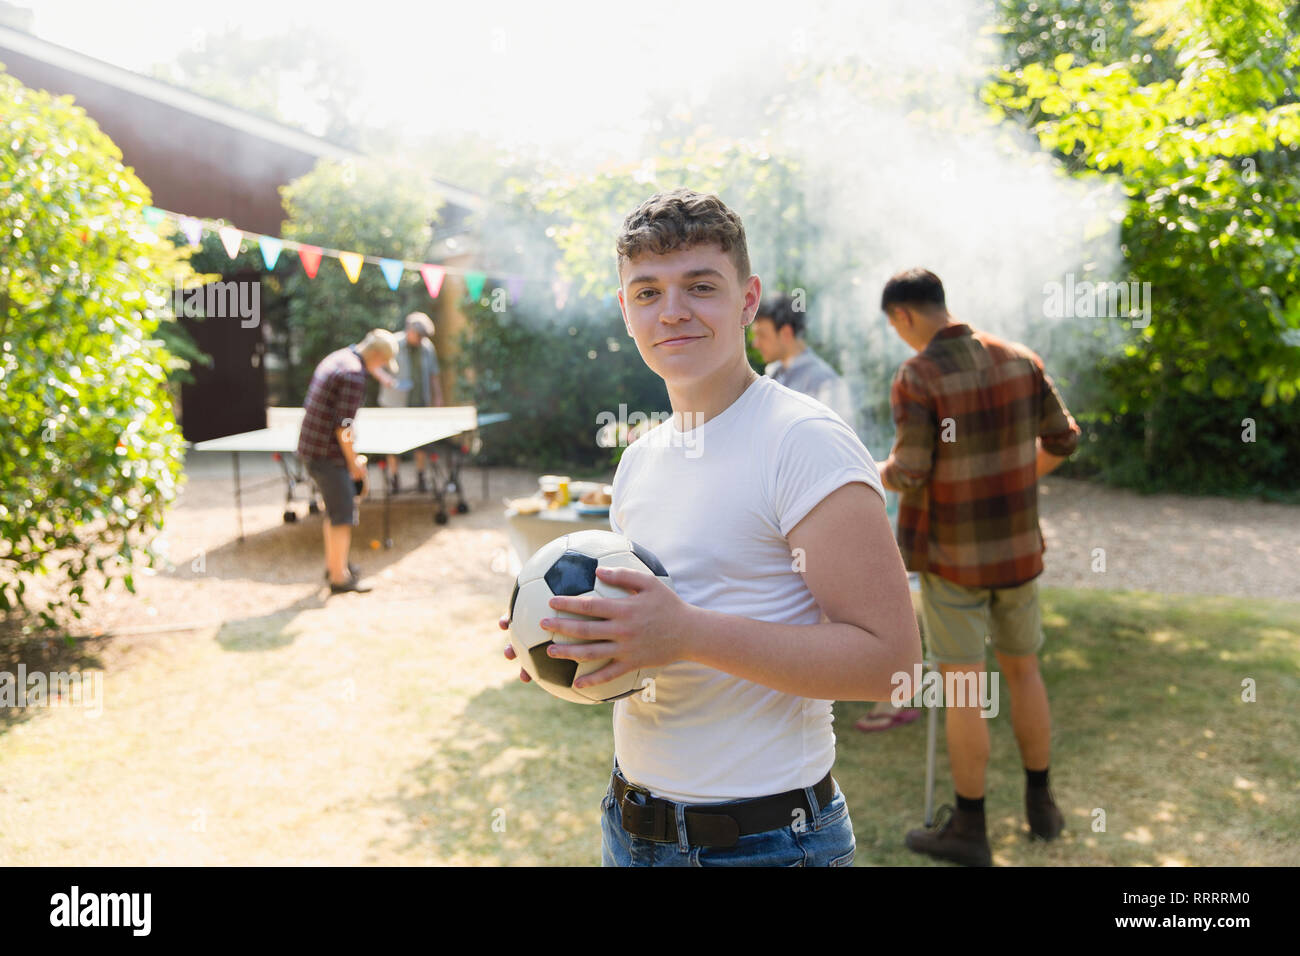 Ritratto fiducioso ragazzo adolescente con pallone da calcio, godendo di backyard barbecue Foto Stock